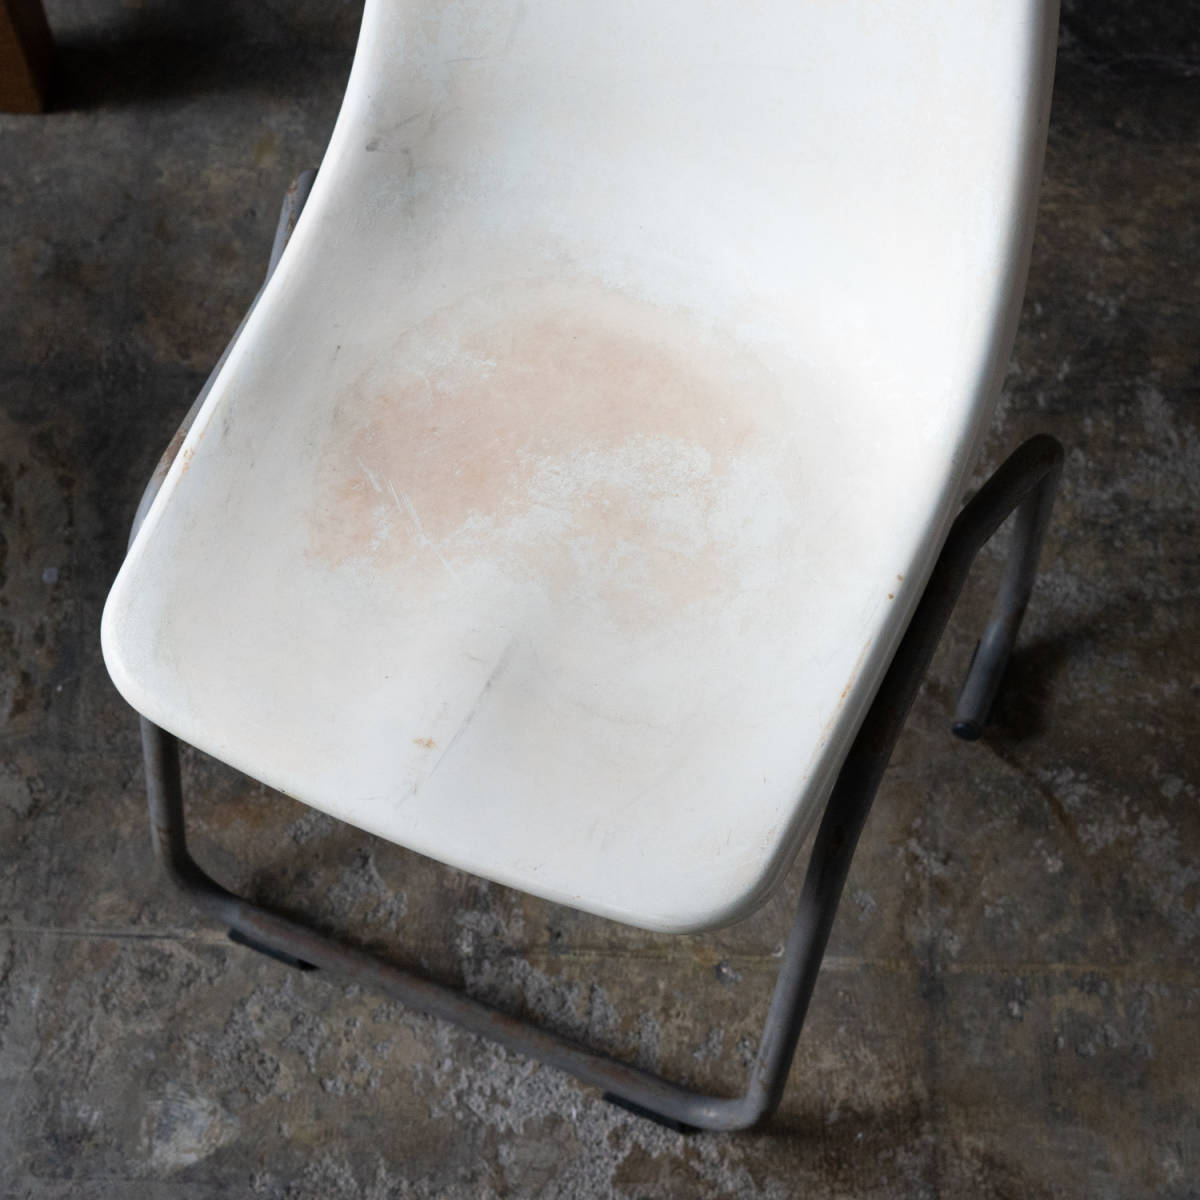  стул старый мебель стул интерьер магазин инвентарь и т.п. in пыль настоящий стул стул 